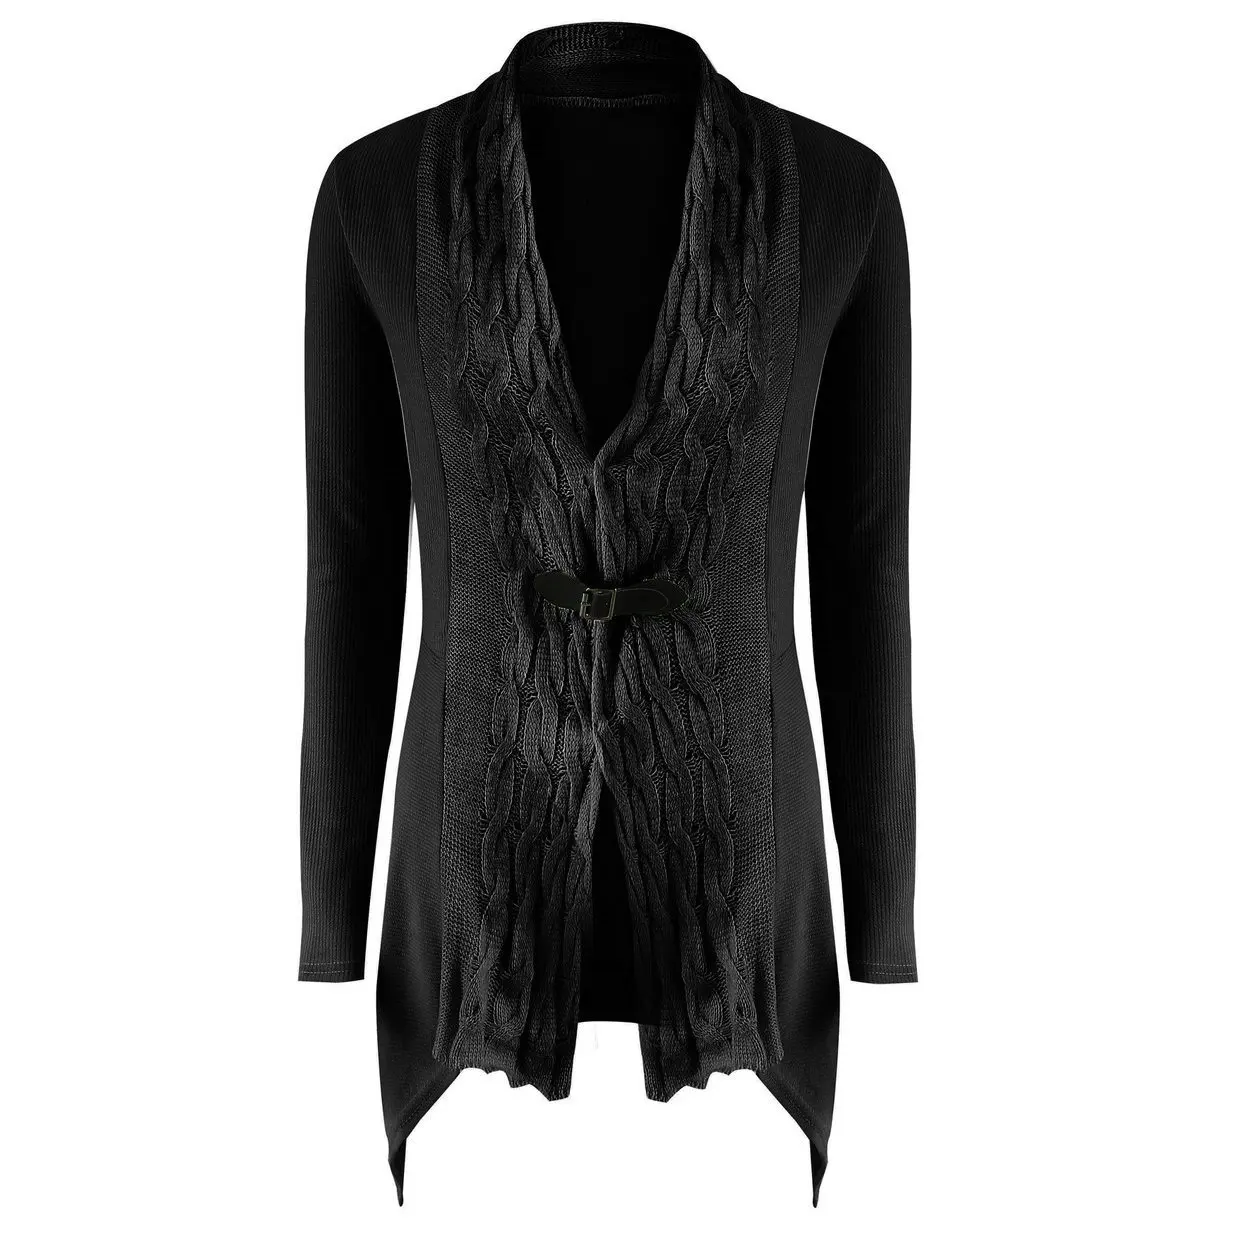 Размера плюс 4XL женский осенний зимний Кардиган пальто с длинным рукавом V шеи трикотажная одежда неправильной формы топы дамы тонкий свитер куртка верхняя одежда - Цвет: 2208-Black